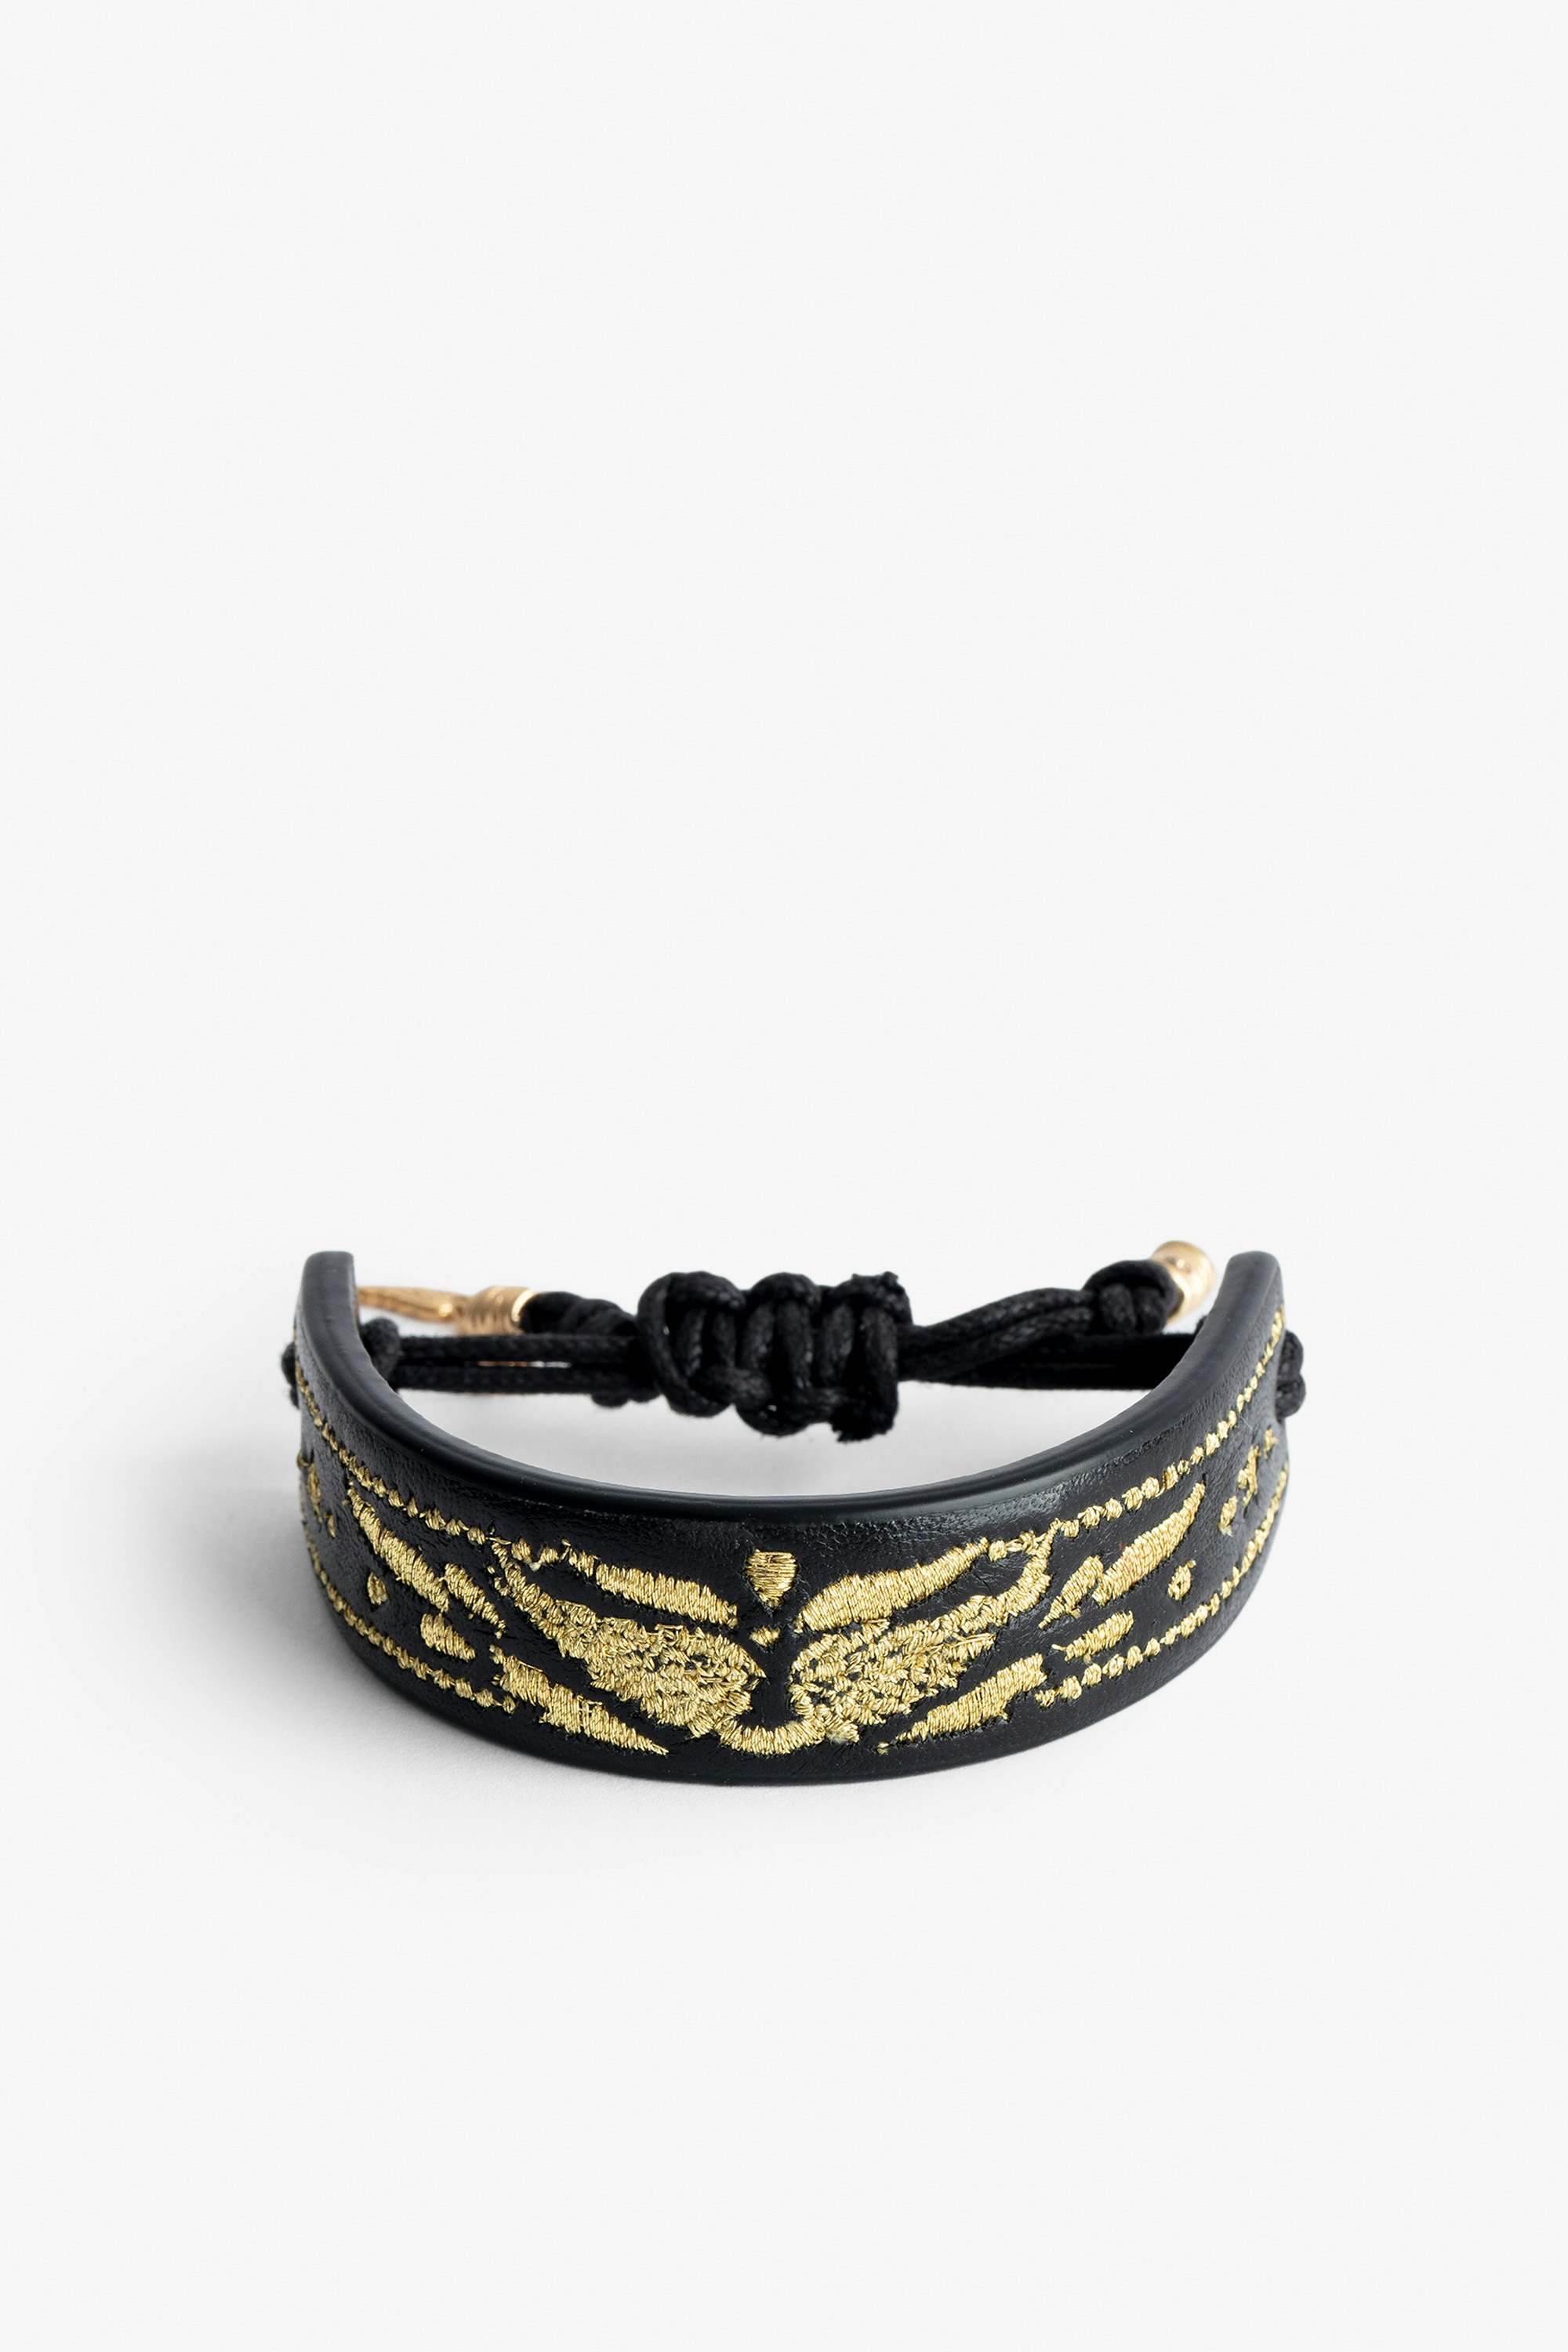 Armband Lenny  - Voltaire Vice Manschettenarmband aus schwarzem Leder zum Knüpfen mit goldenen Flügeln.